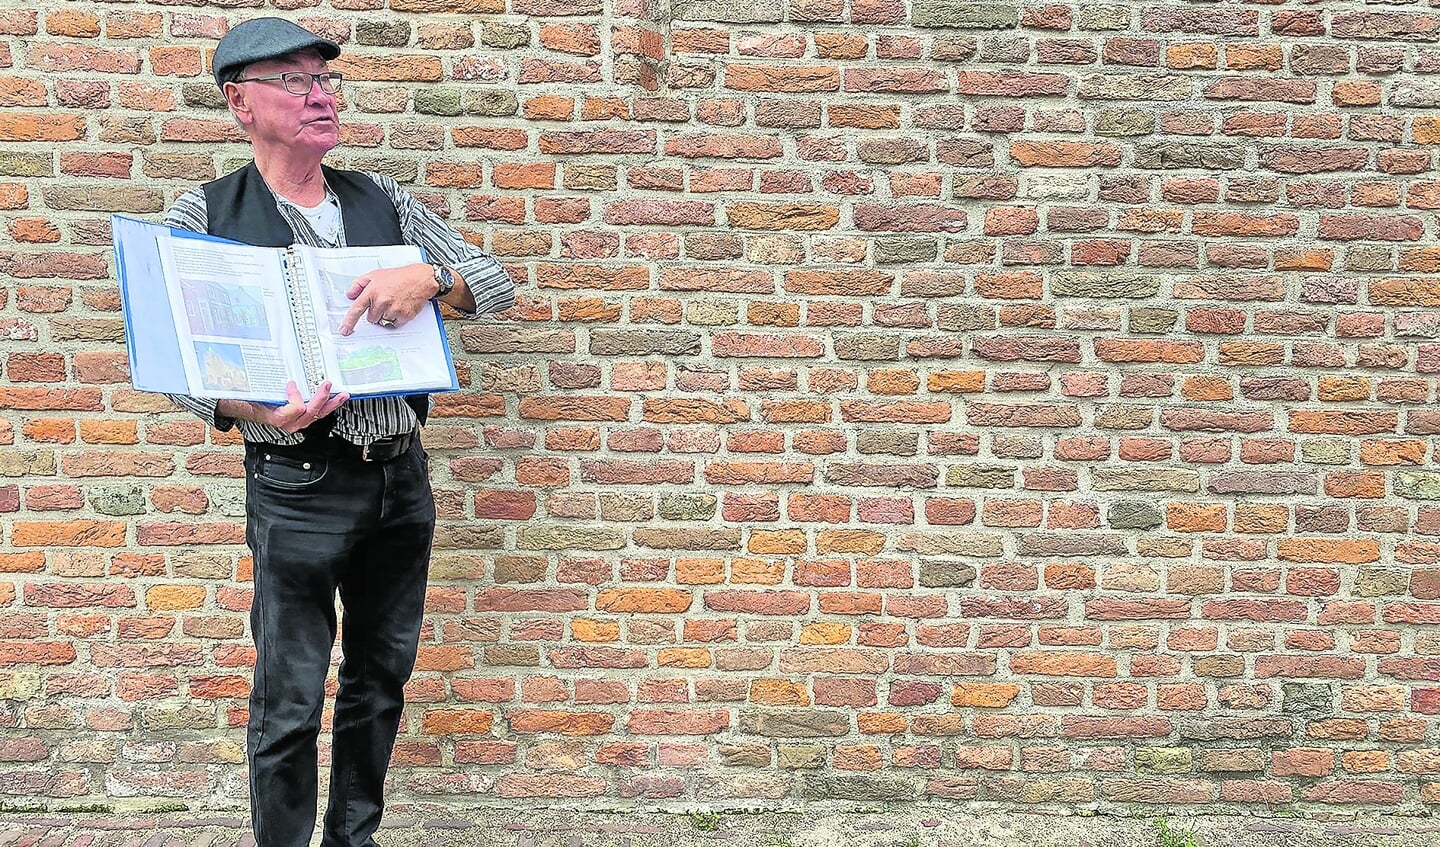 Gids Hans Bakker van Vereniging Oud Linschoten vertelt alles over de hagioscoop in de kerk - Hier konden mensen met pest meeluisteren.